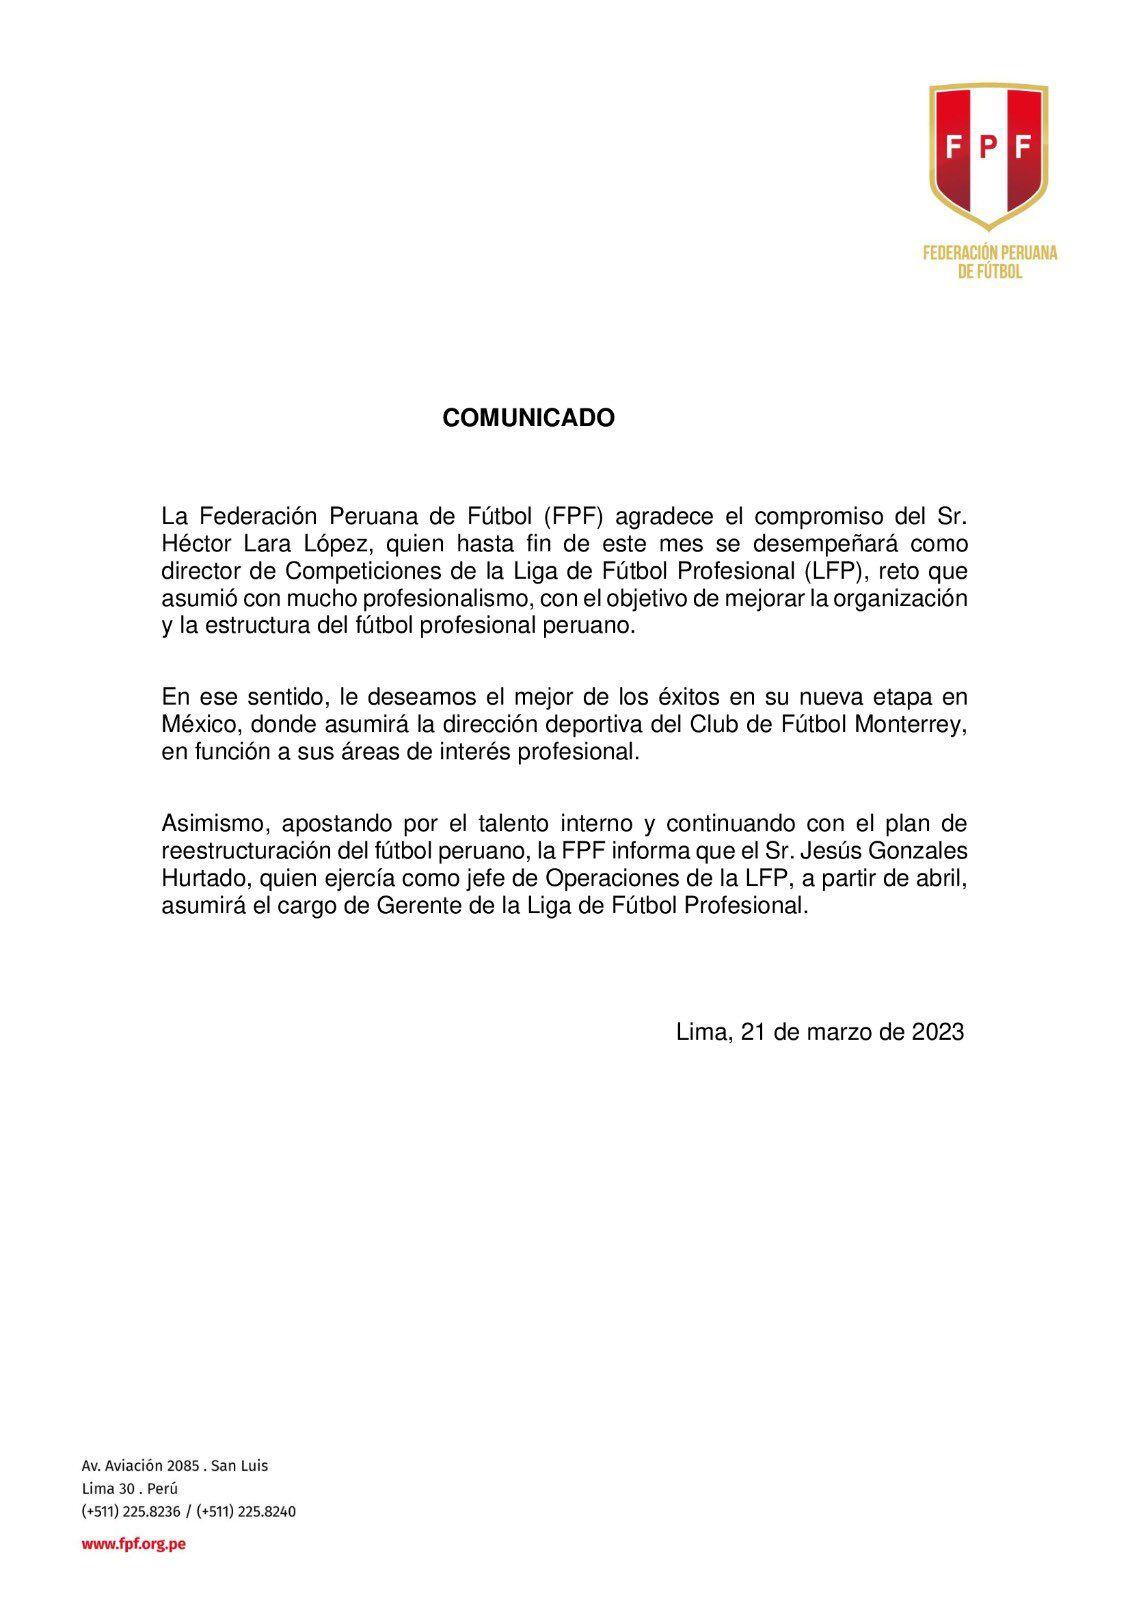 Comunicado de la Federación Peruana de Fútbol anunciando salida de Héctor Lara. (FPF)